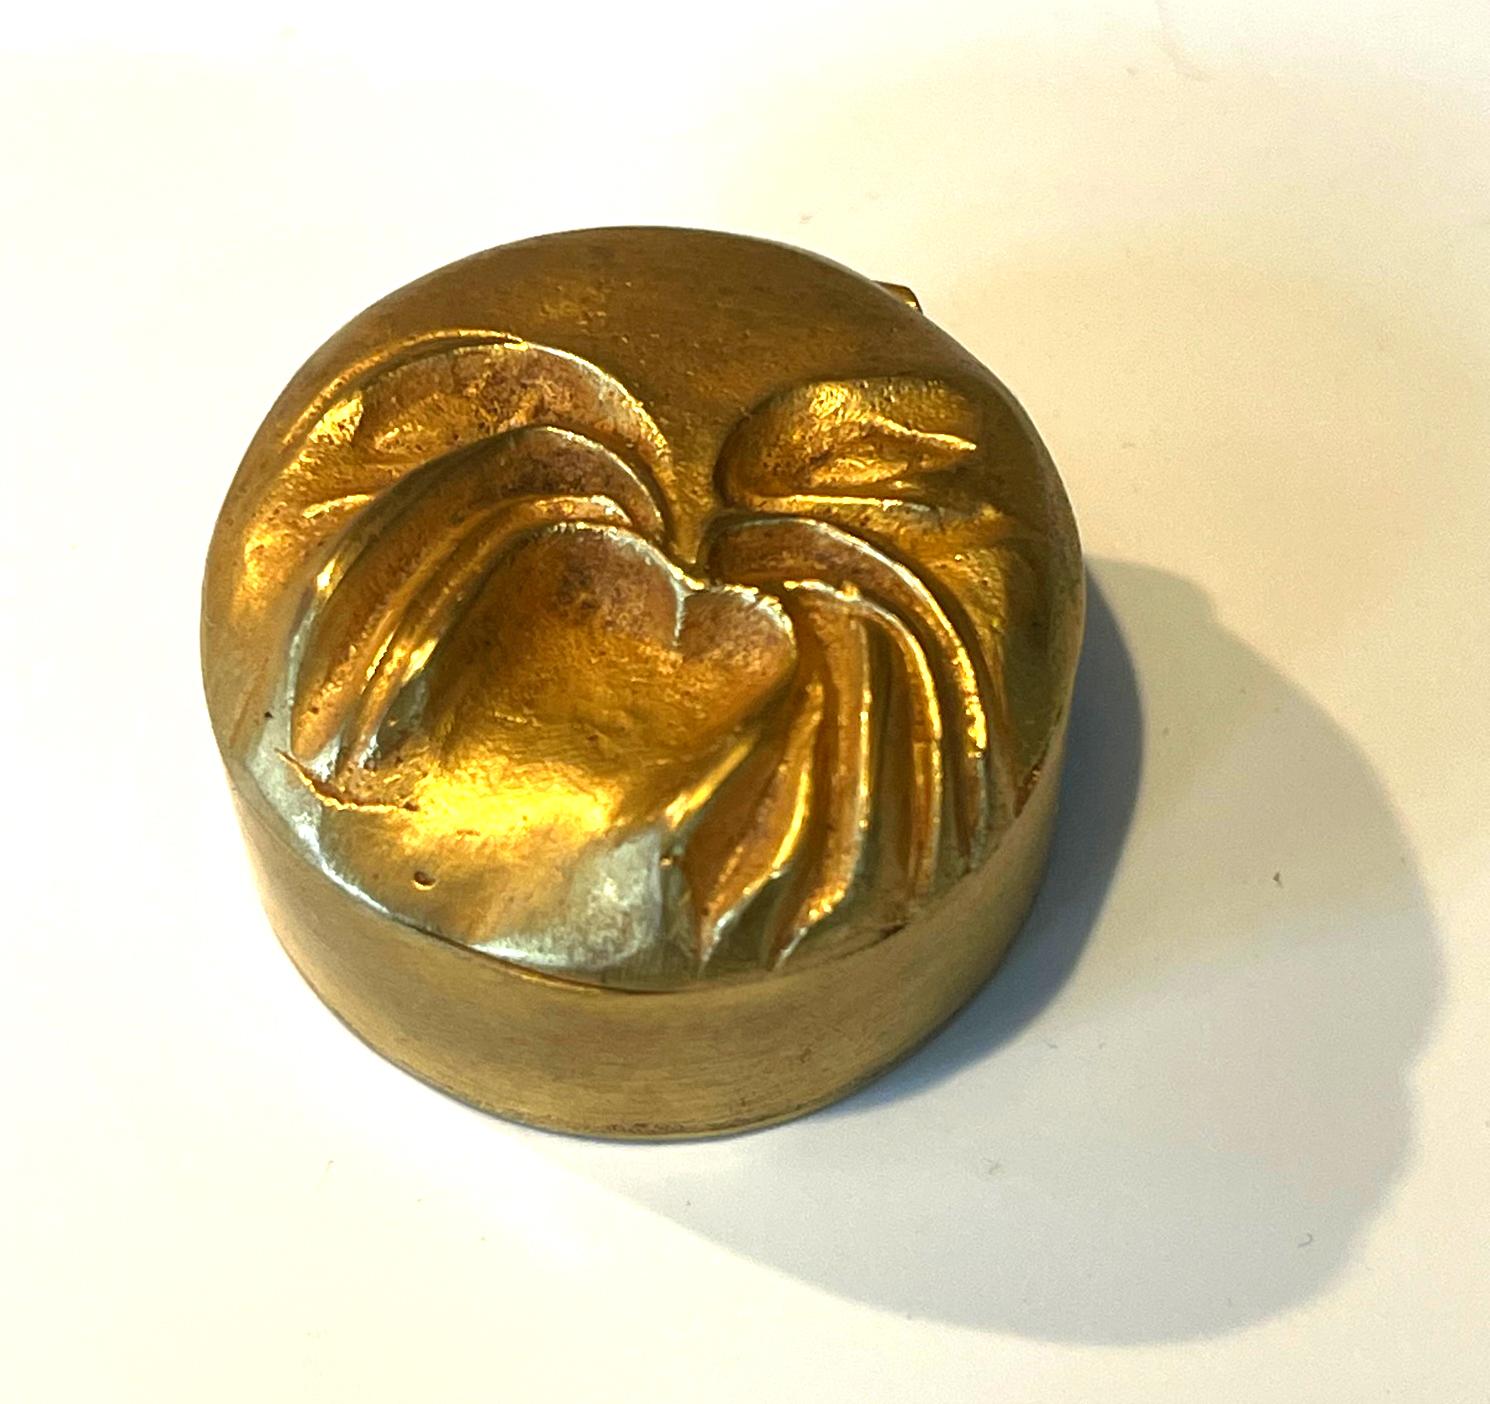 Petite boîte à pilules en bronze doré de Line Vautrin (1913-1997), joaillière d'art parisienne, vers les années 1940-50. La boîte ronde, plutôt rare, présente une araignée en relief sur le couvercle. L'intérieur conserve la doublure en liège